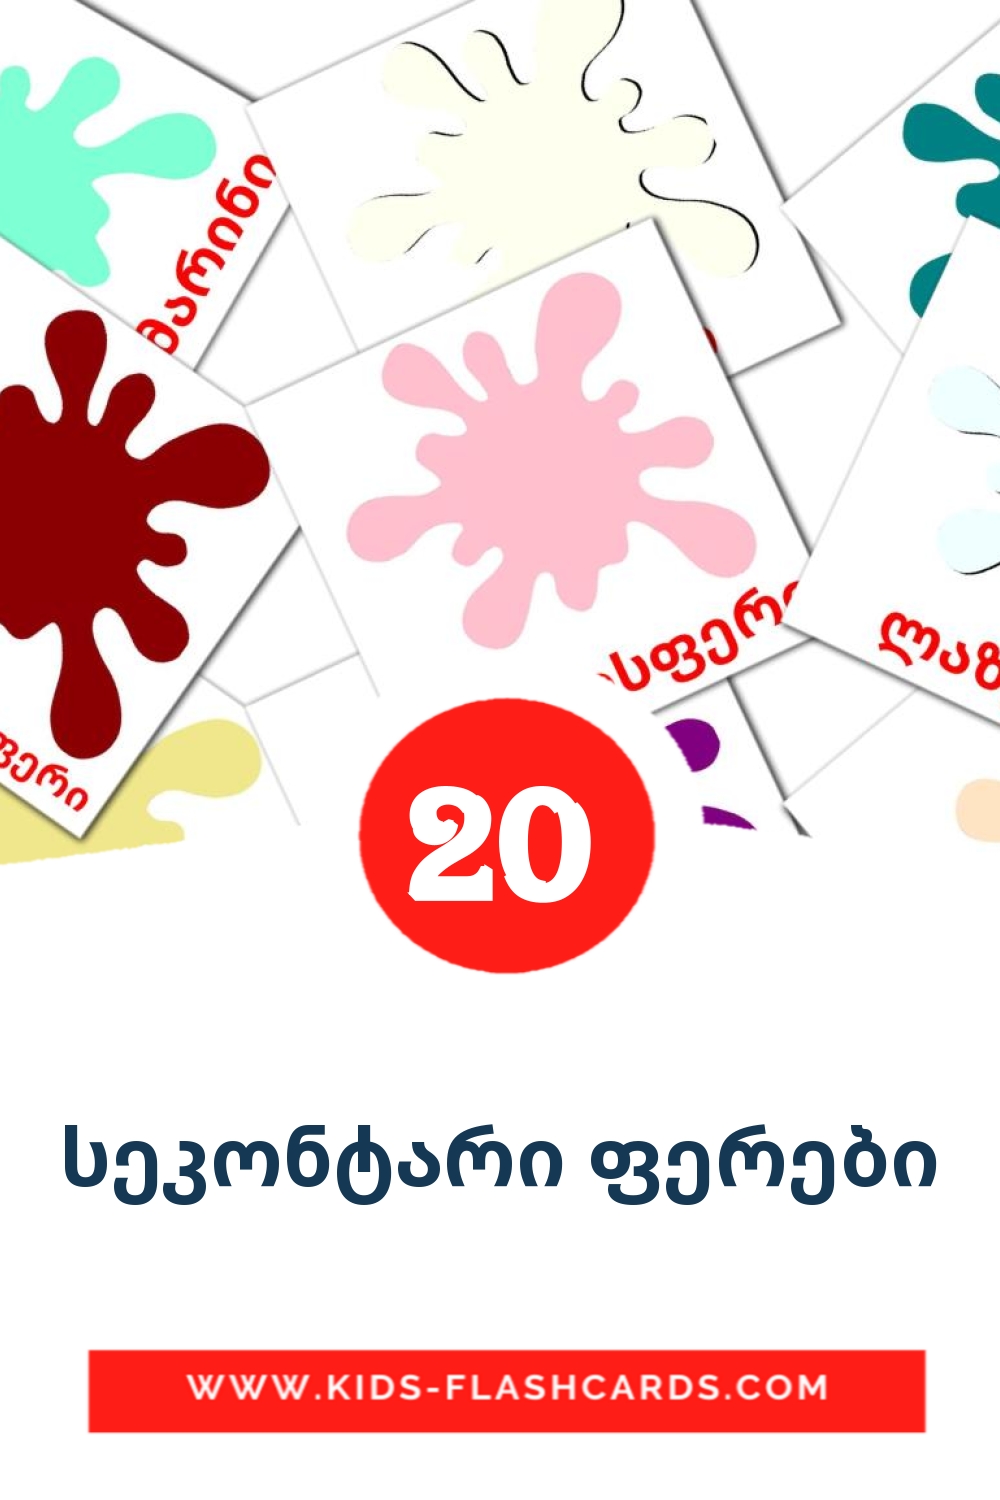 20 Cartões com Imagens de სეკონტარი ფერები para Jardim de Infância em georgiano